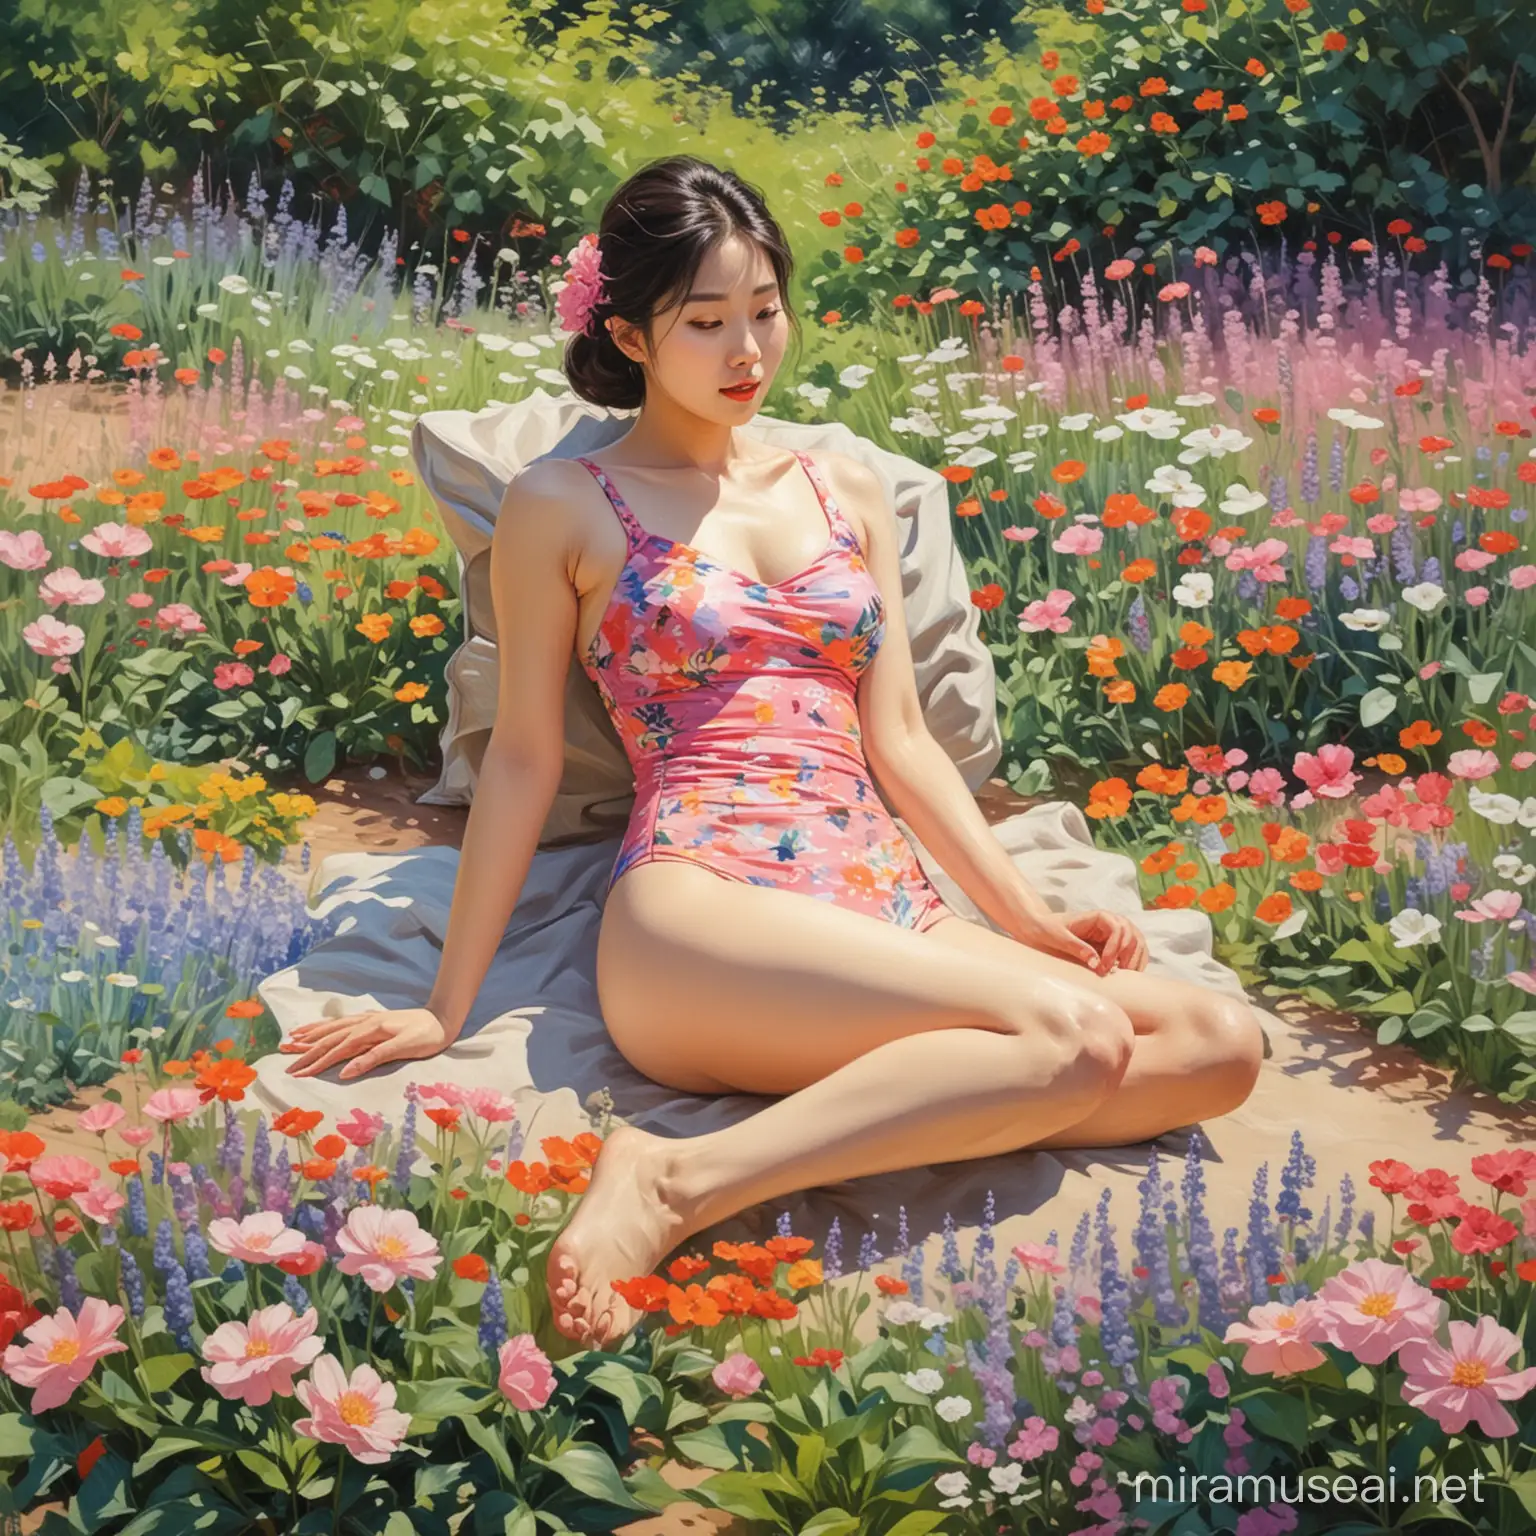 Peinture impressionniste femme coréenne allongée en maillot de bain, dans un magnifique jardin en fleur.